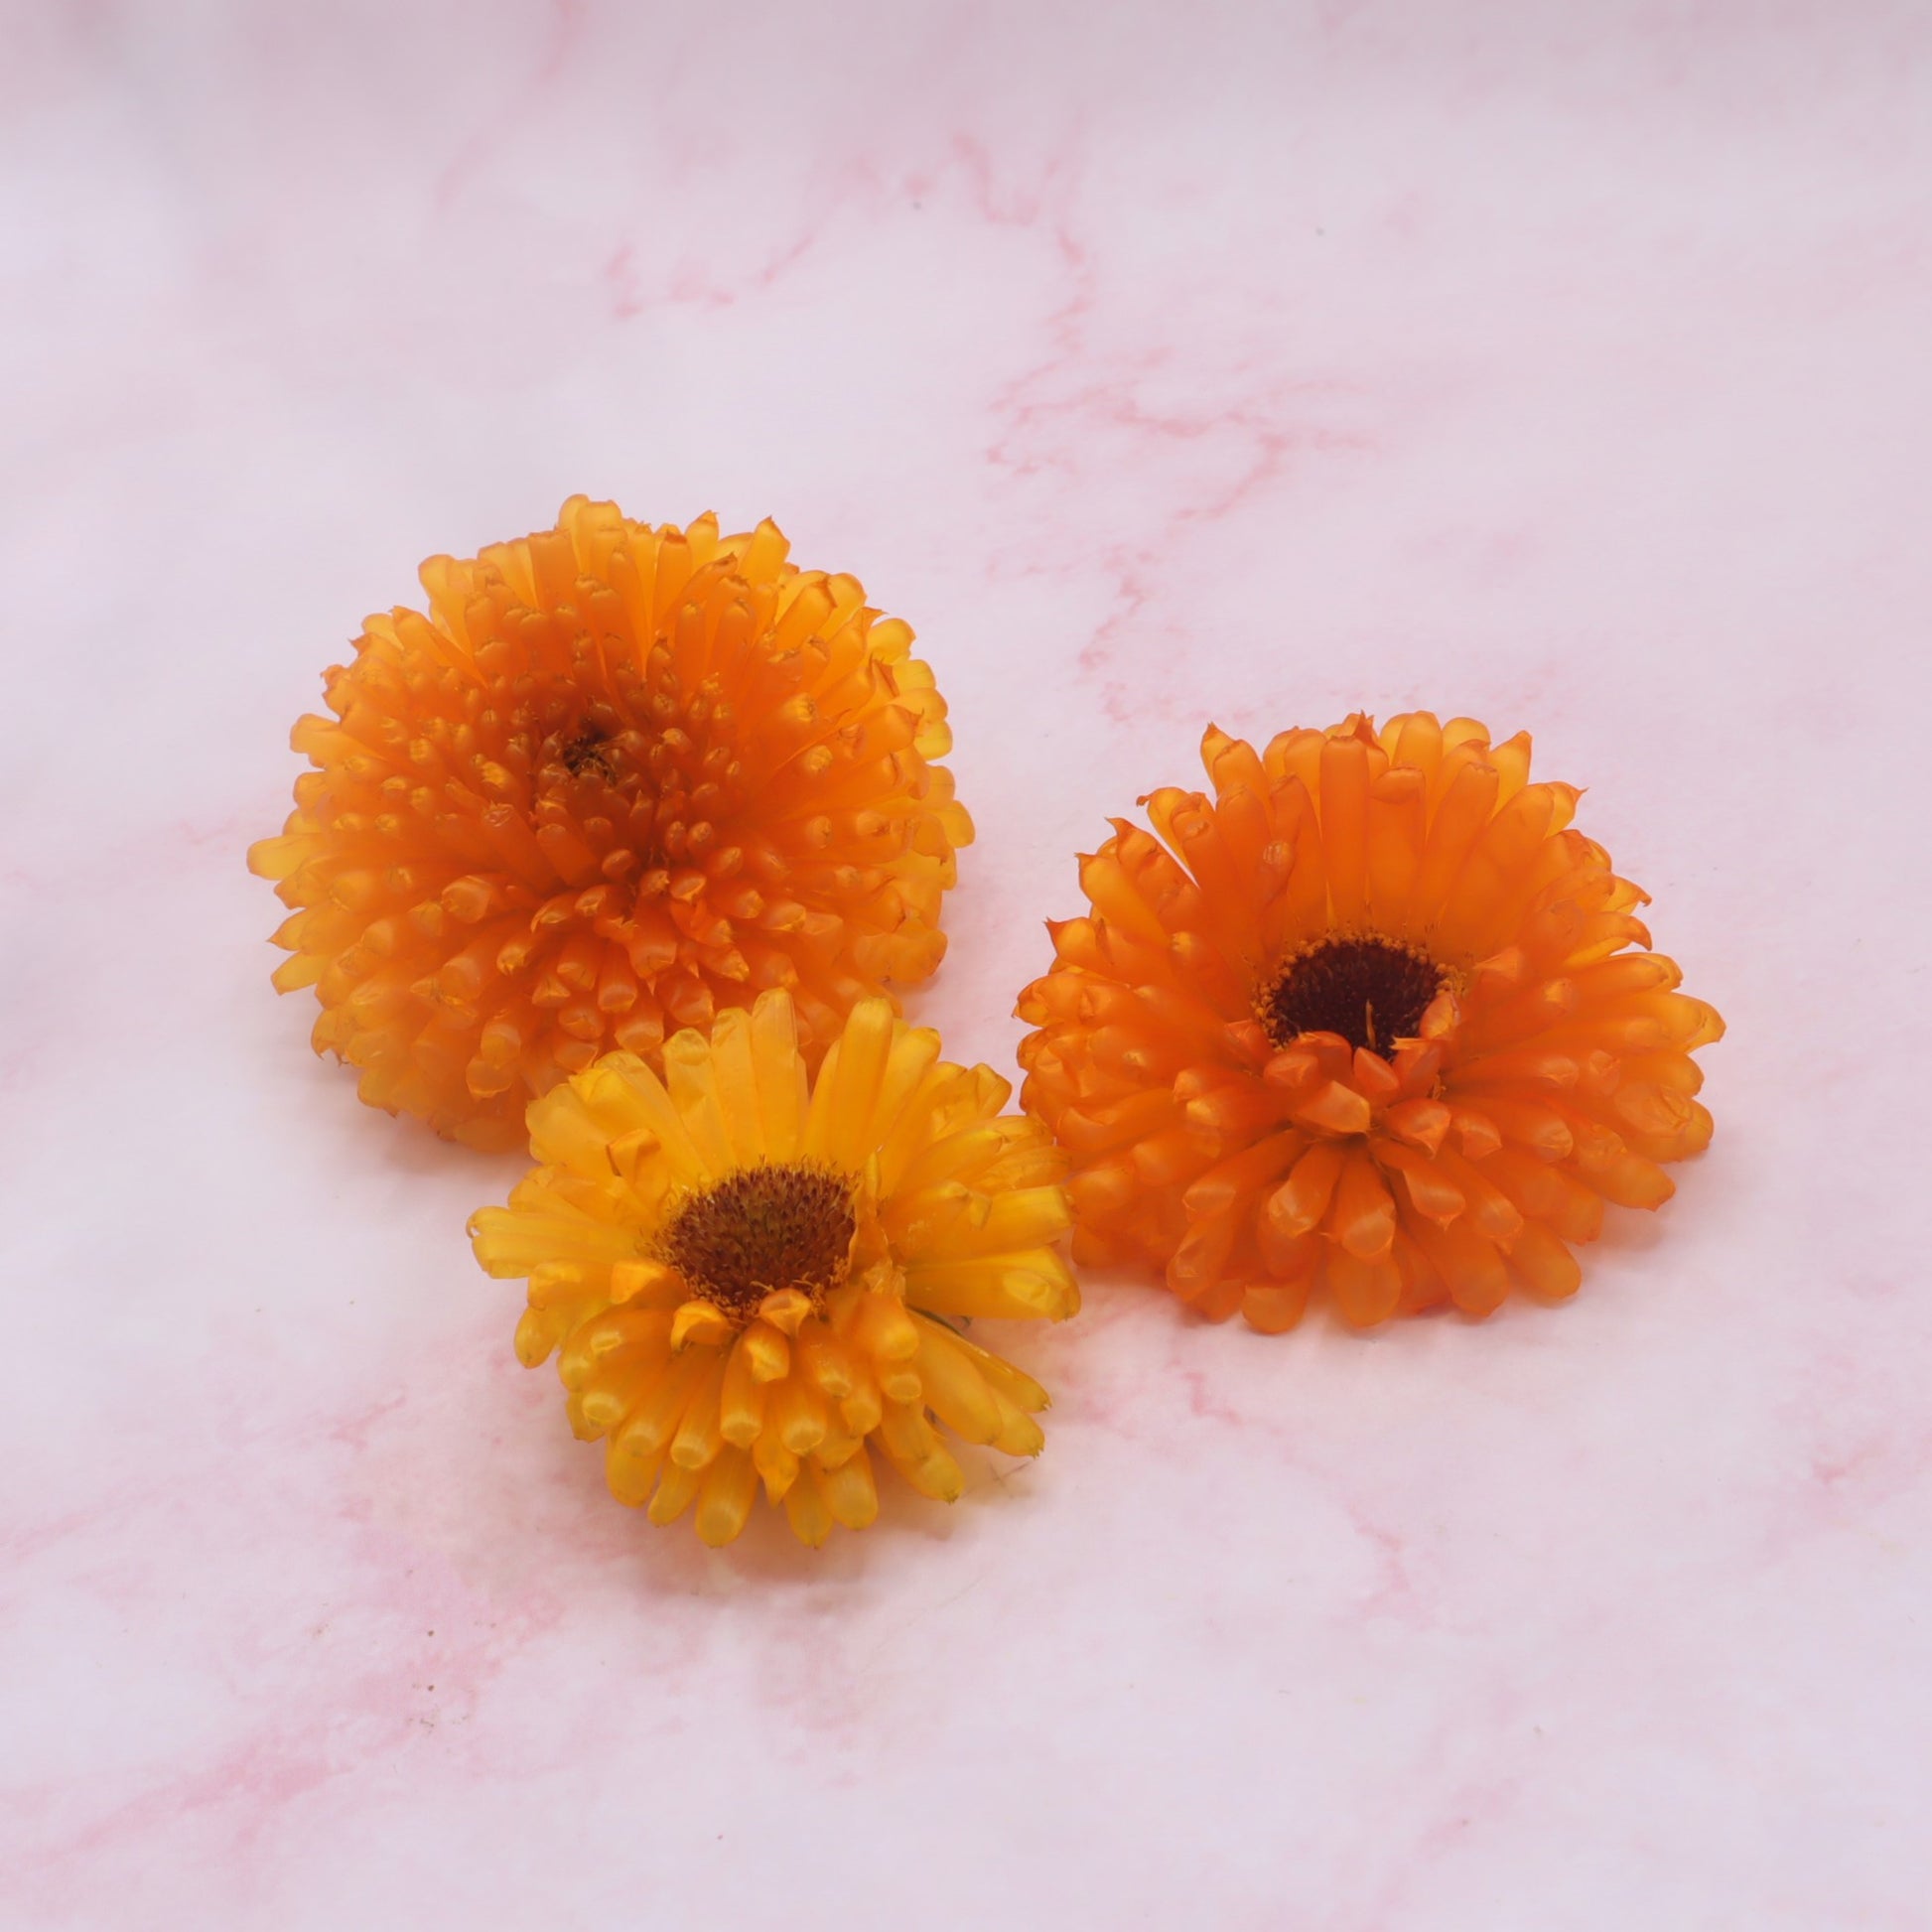 Gevriesdroogde eetbare Goudsbloem. Freeze dried edible Caledula. Floral Delight webshop online bestellen eetbare bloemen